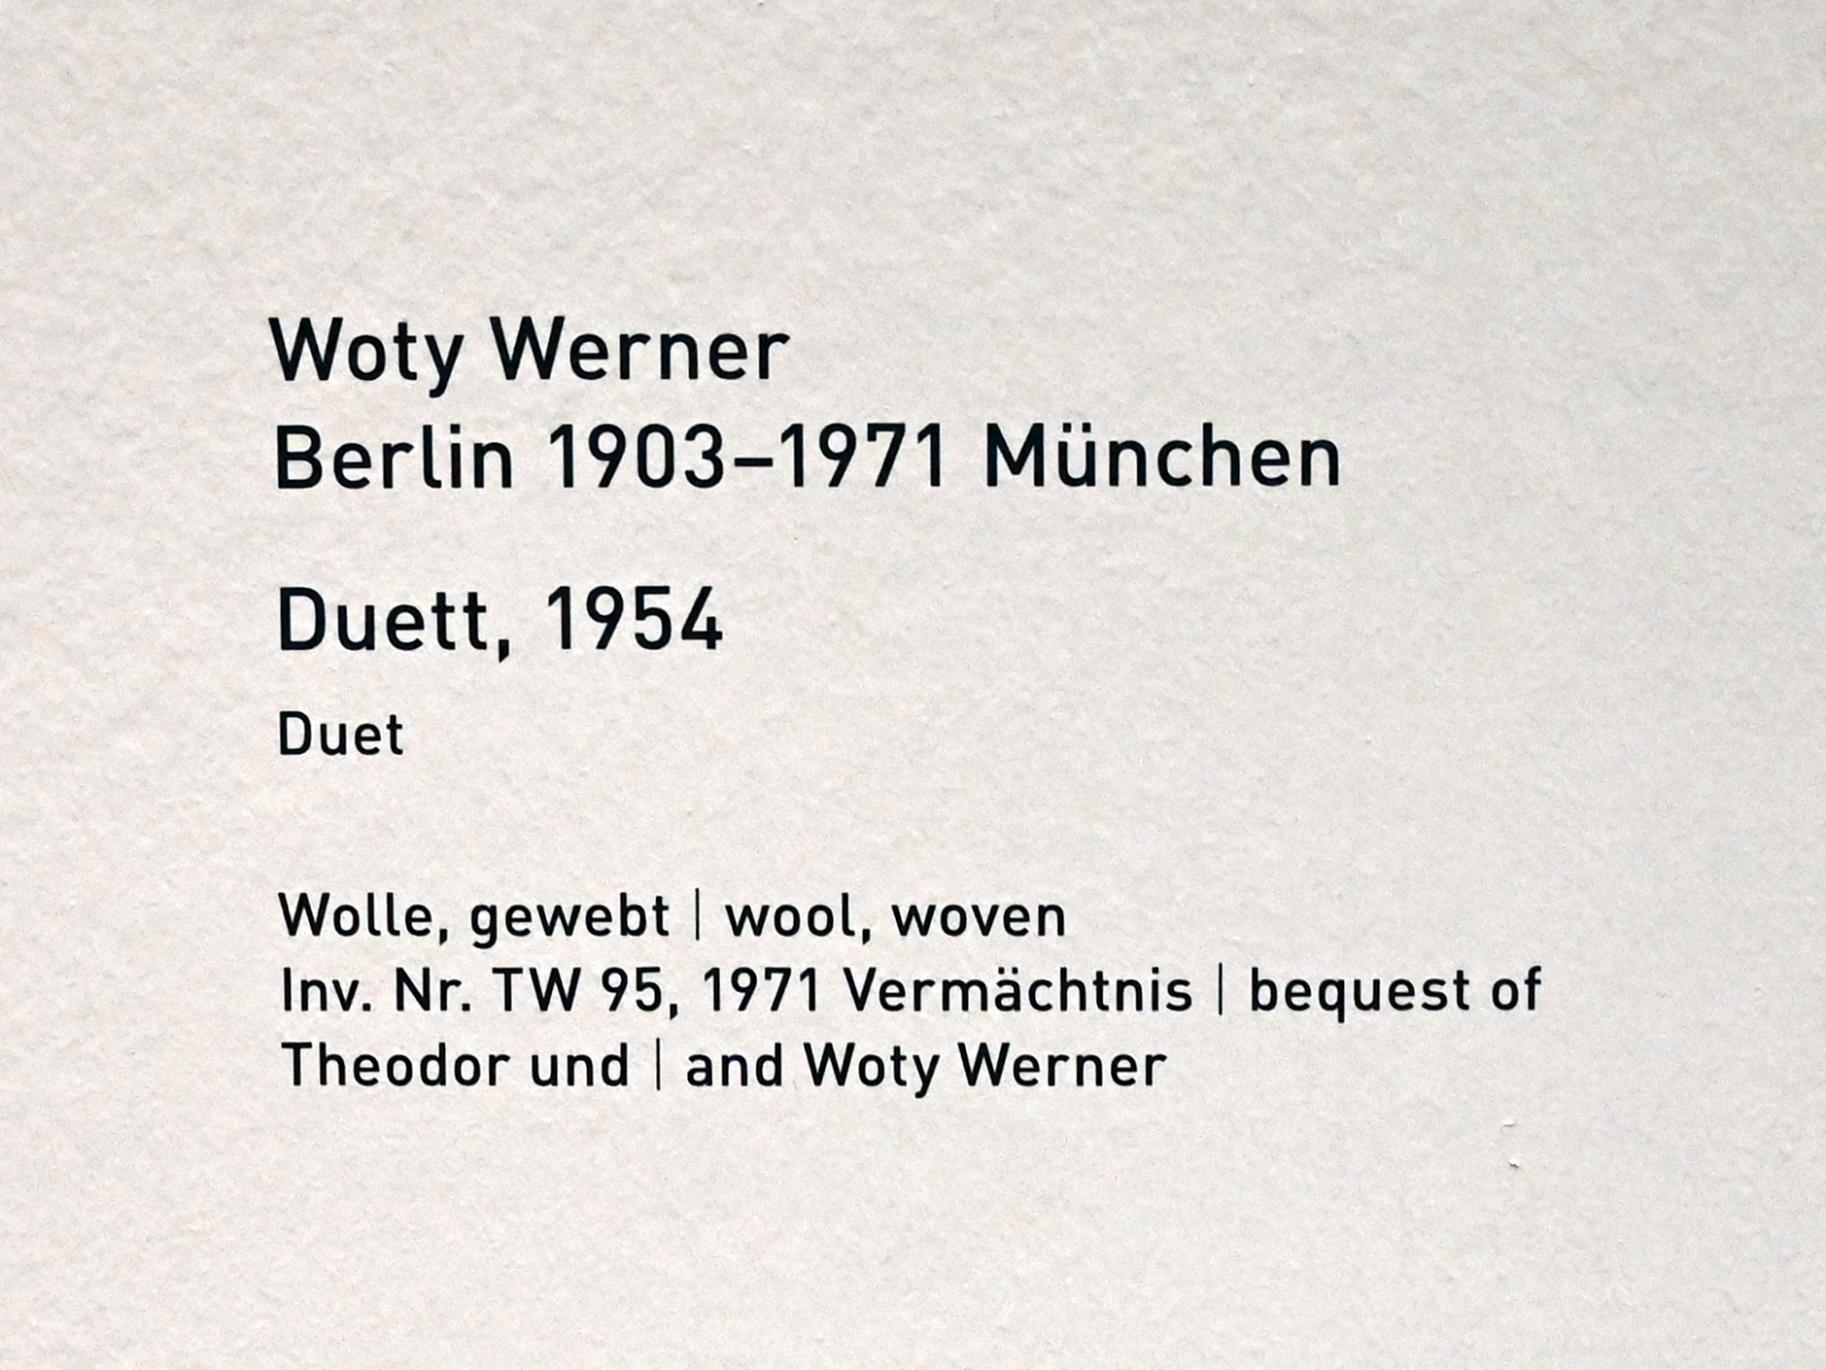 Woty Werner (1954–1967), Duett, München, Pinakothek der Moderne, Saal 15, 1954, Bild 2/2